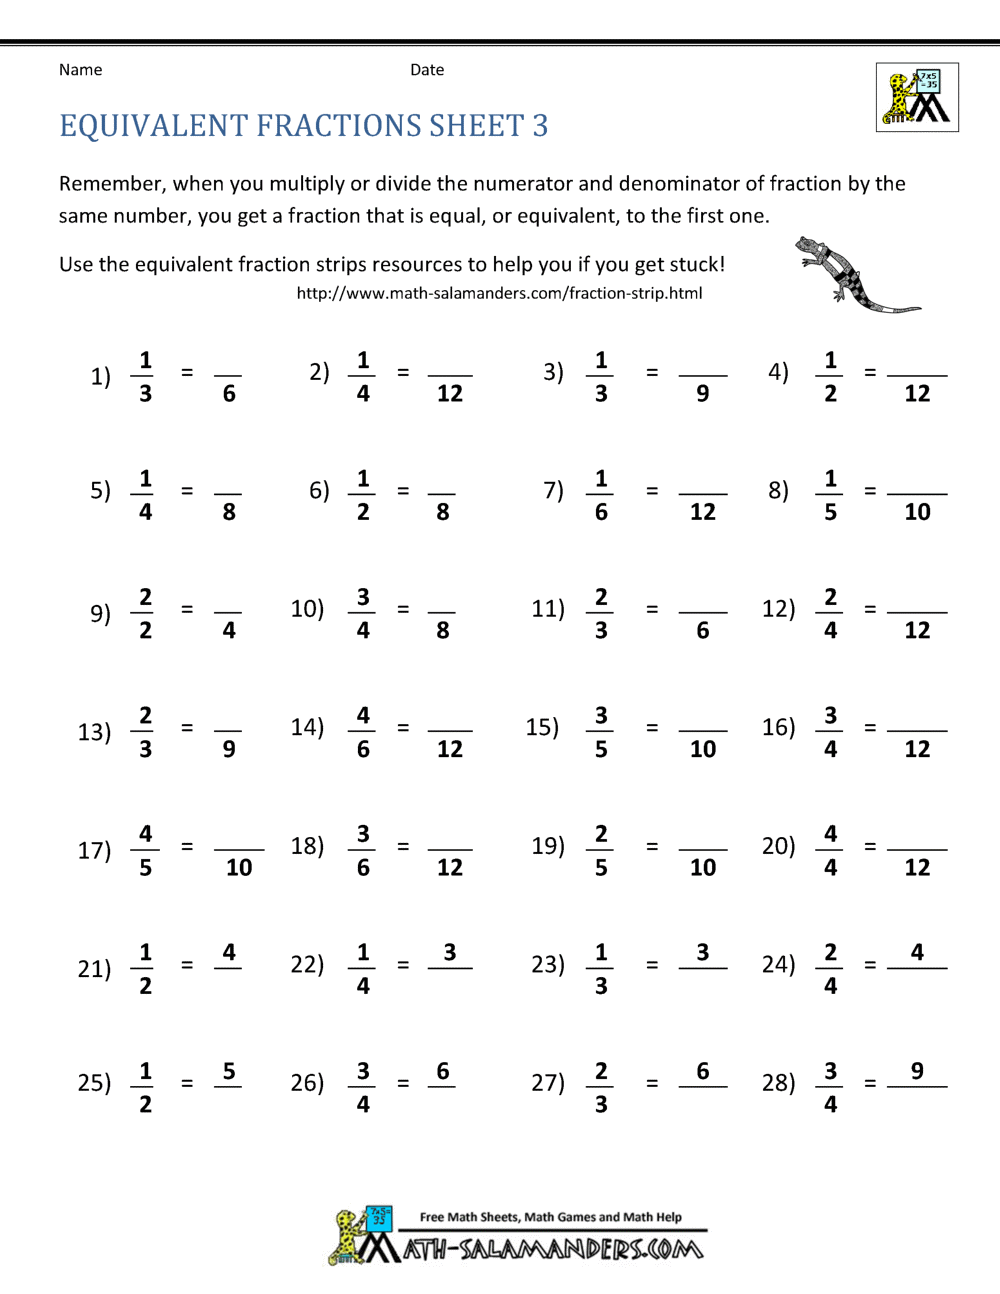 Help fractions math homework helper